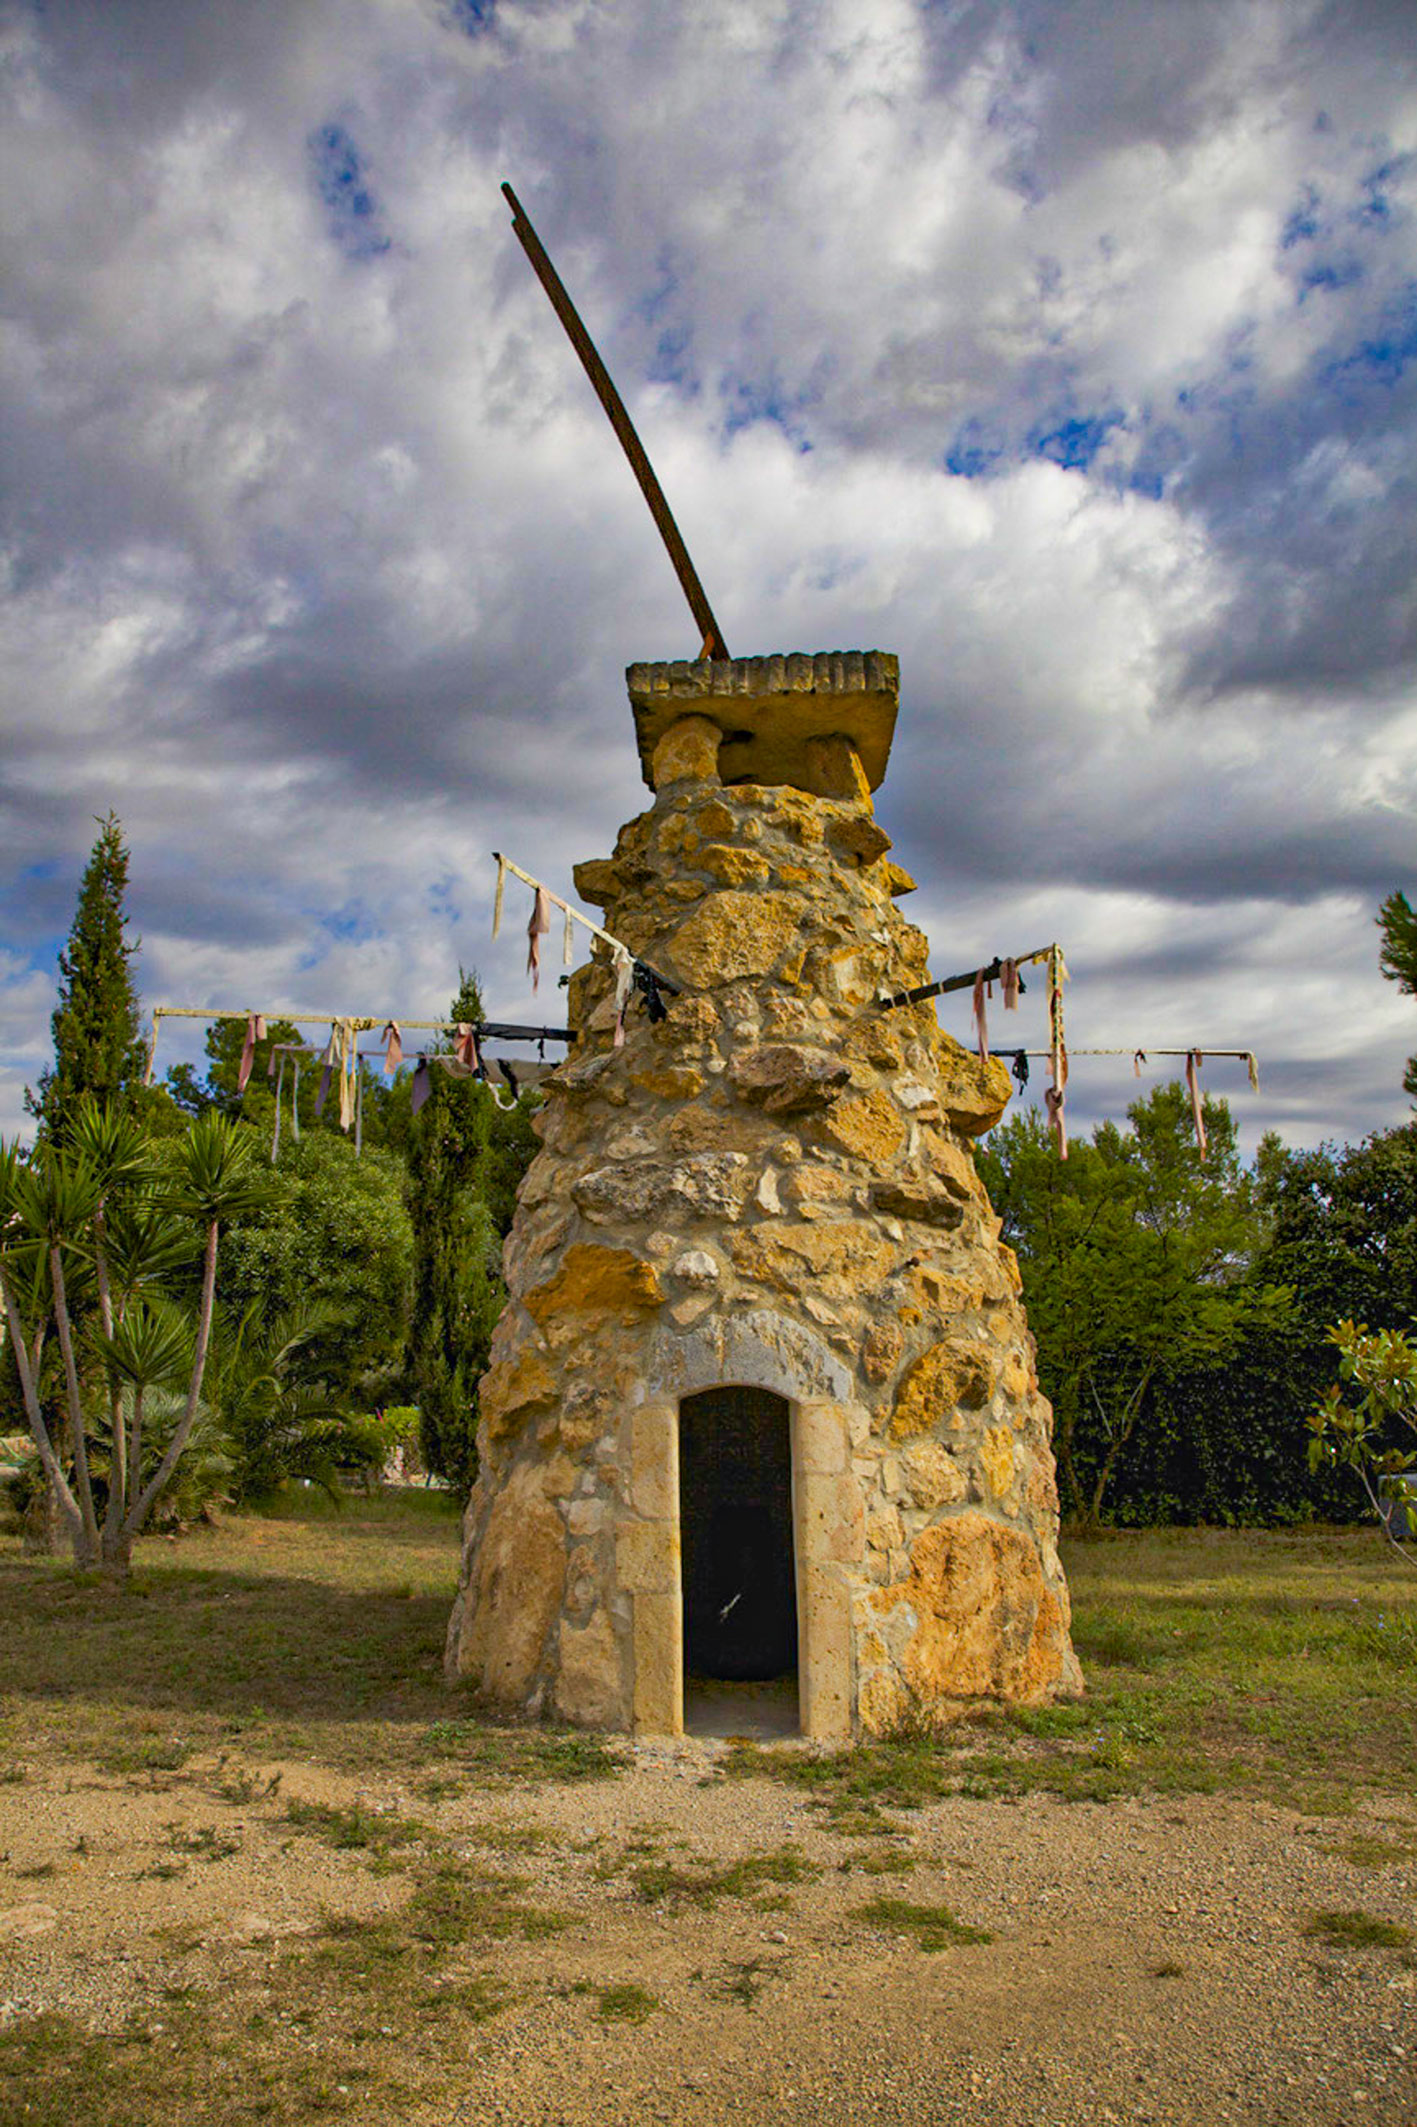 The Muyahidín Tower